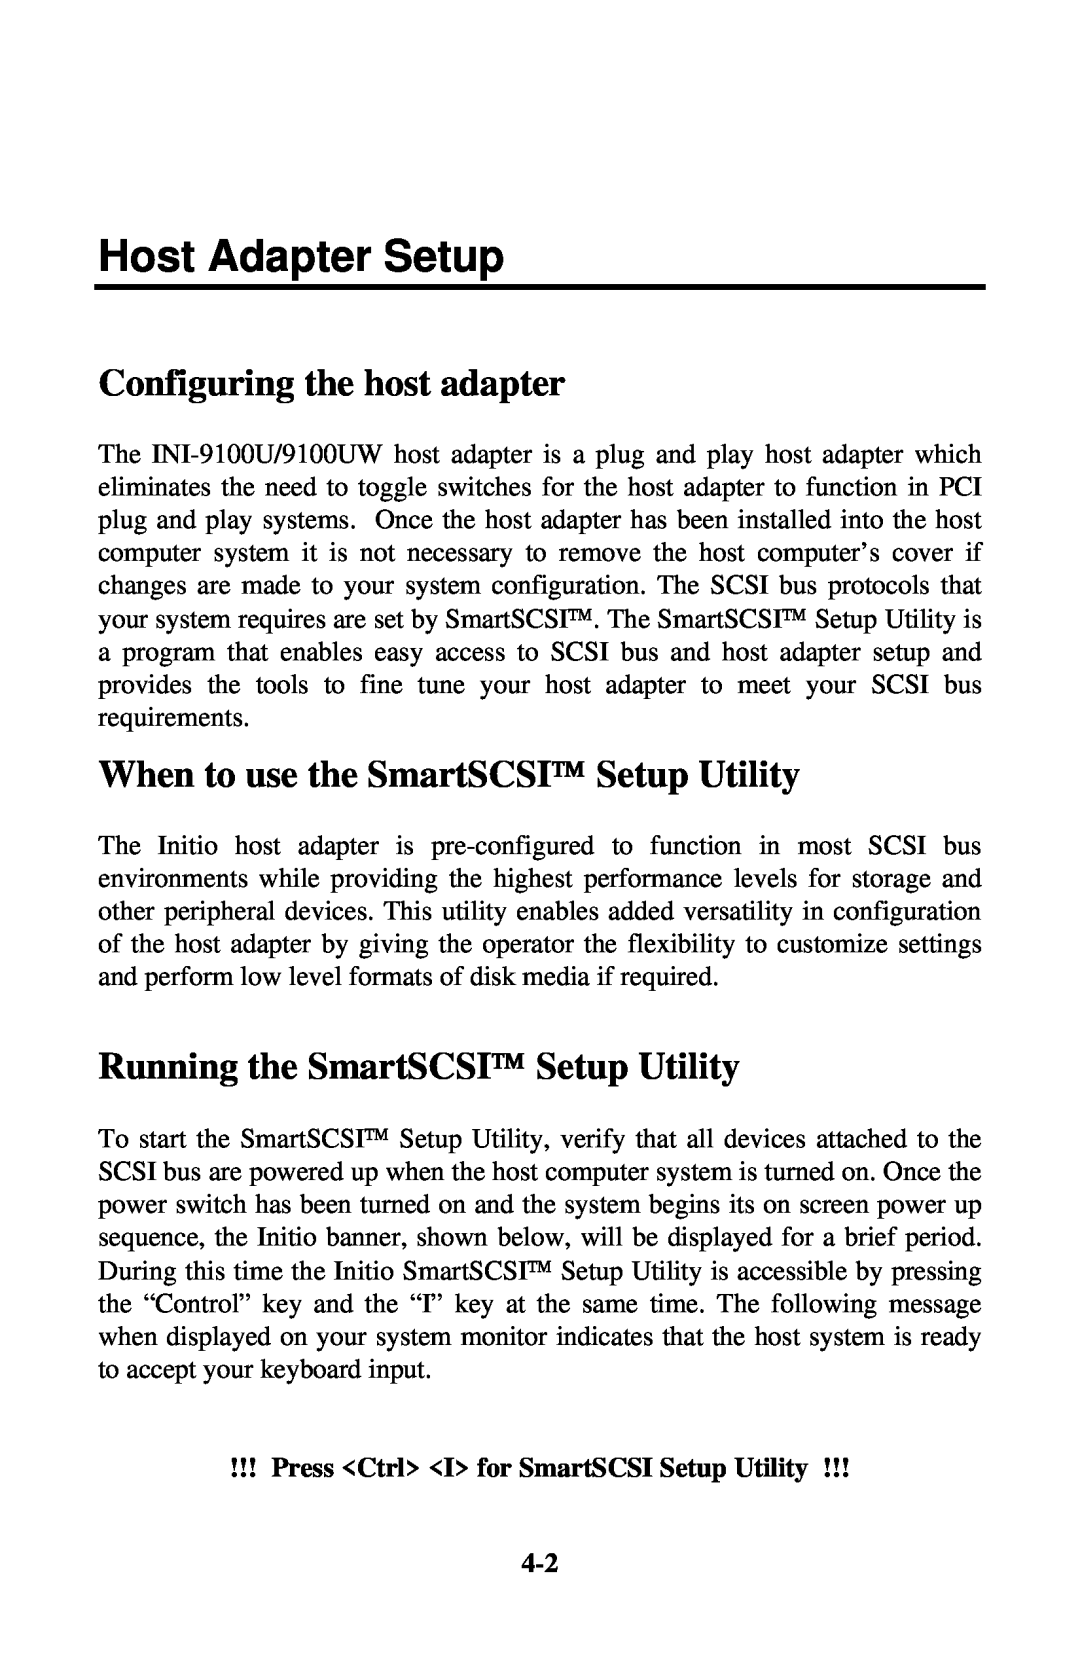 Initio INI-9100U Host Adapter Setup, When to use the SmartSCSI Setup Utility, Running the SmartSCSI Setup Utility 